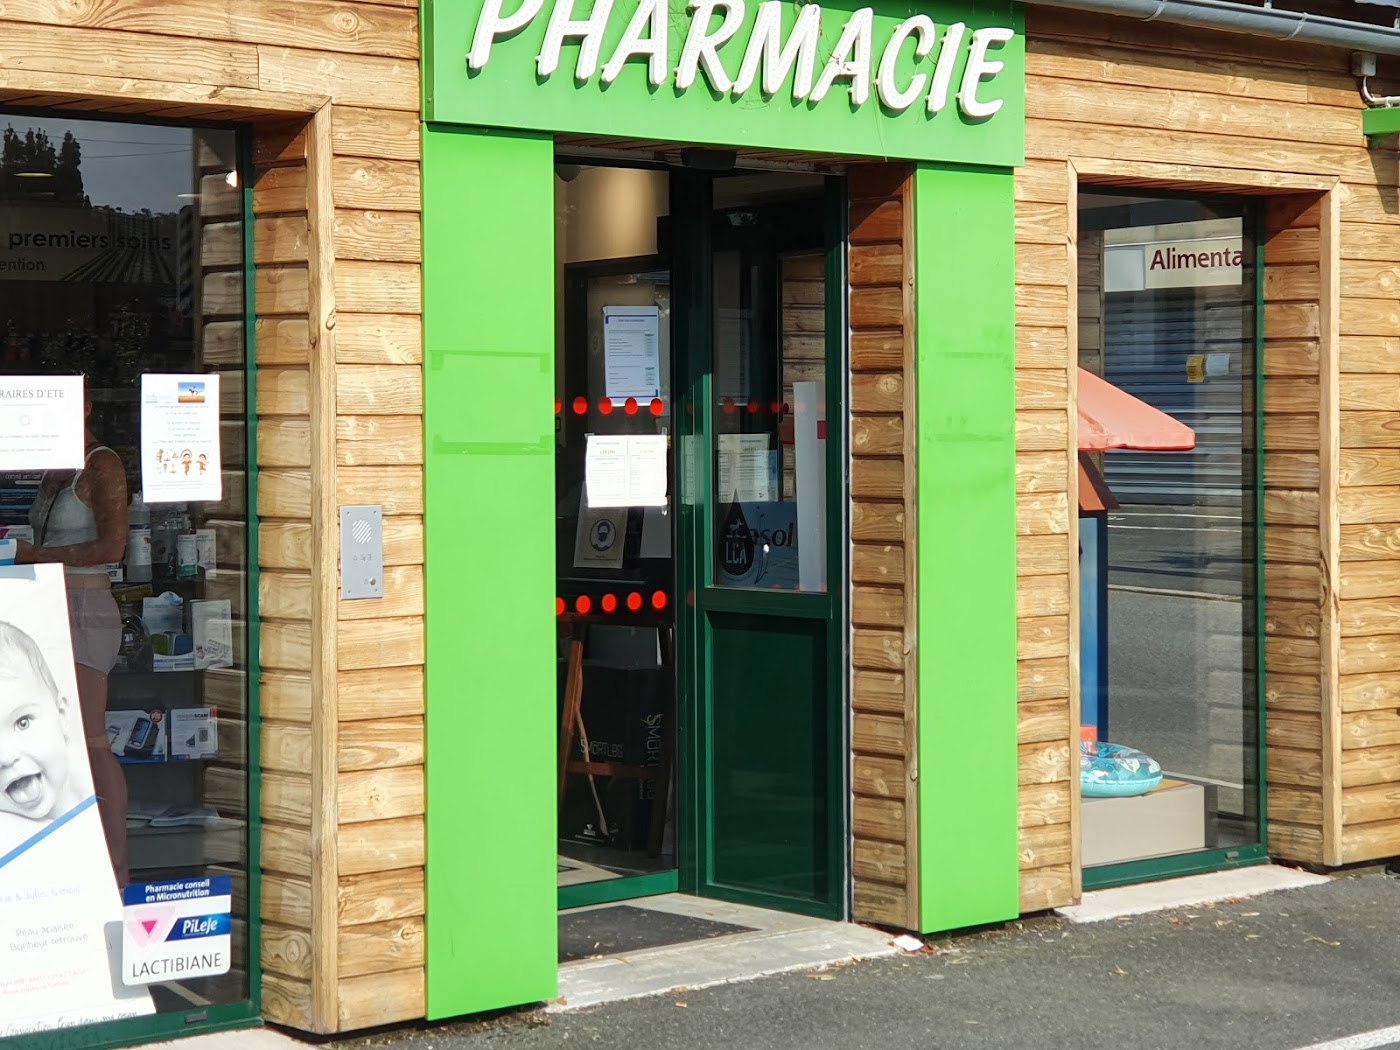 Pharmacie Dorangeon